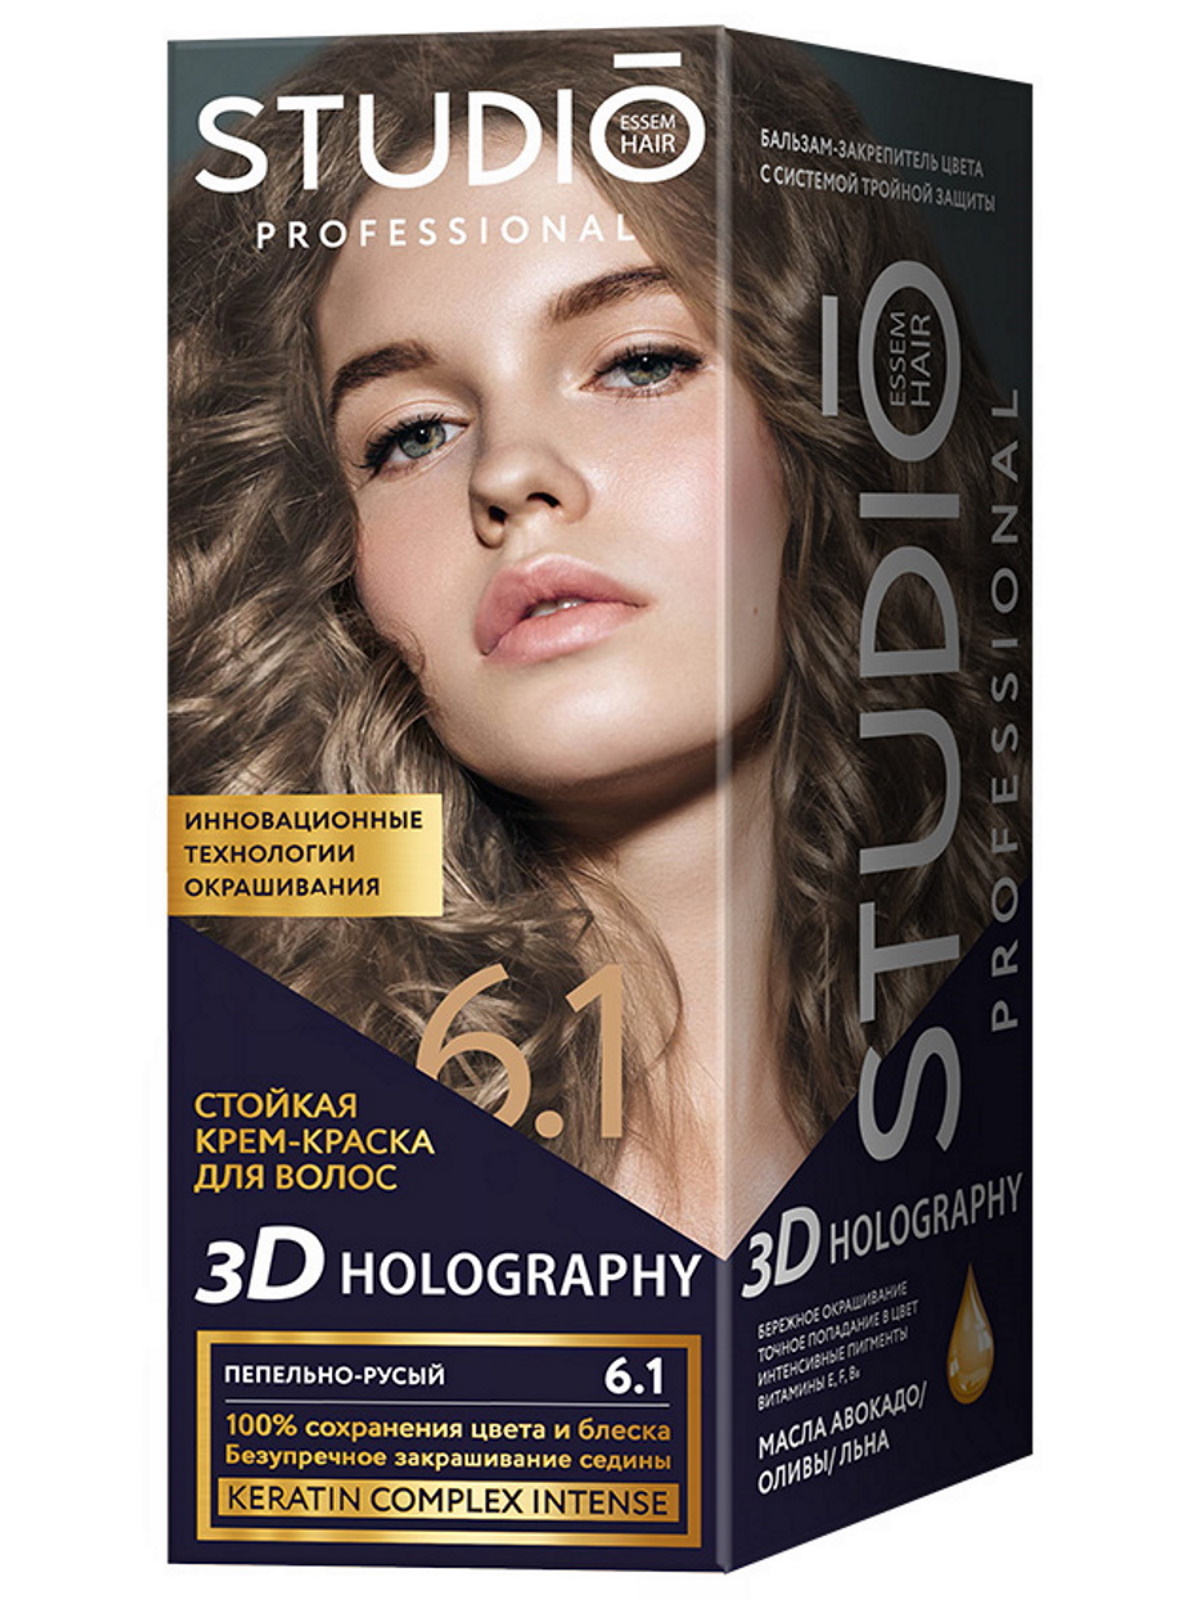 Комплект 3D HOLOGRAPHY STUDIO PROFESSIONAL 6.1 пепельно-русый 2*50+15 мл комплект 3d holography studio professional 1 0 2 50 15 мл